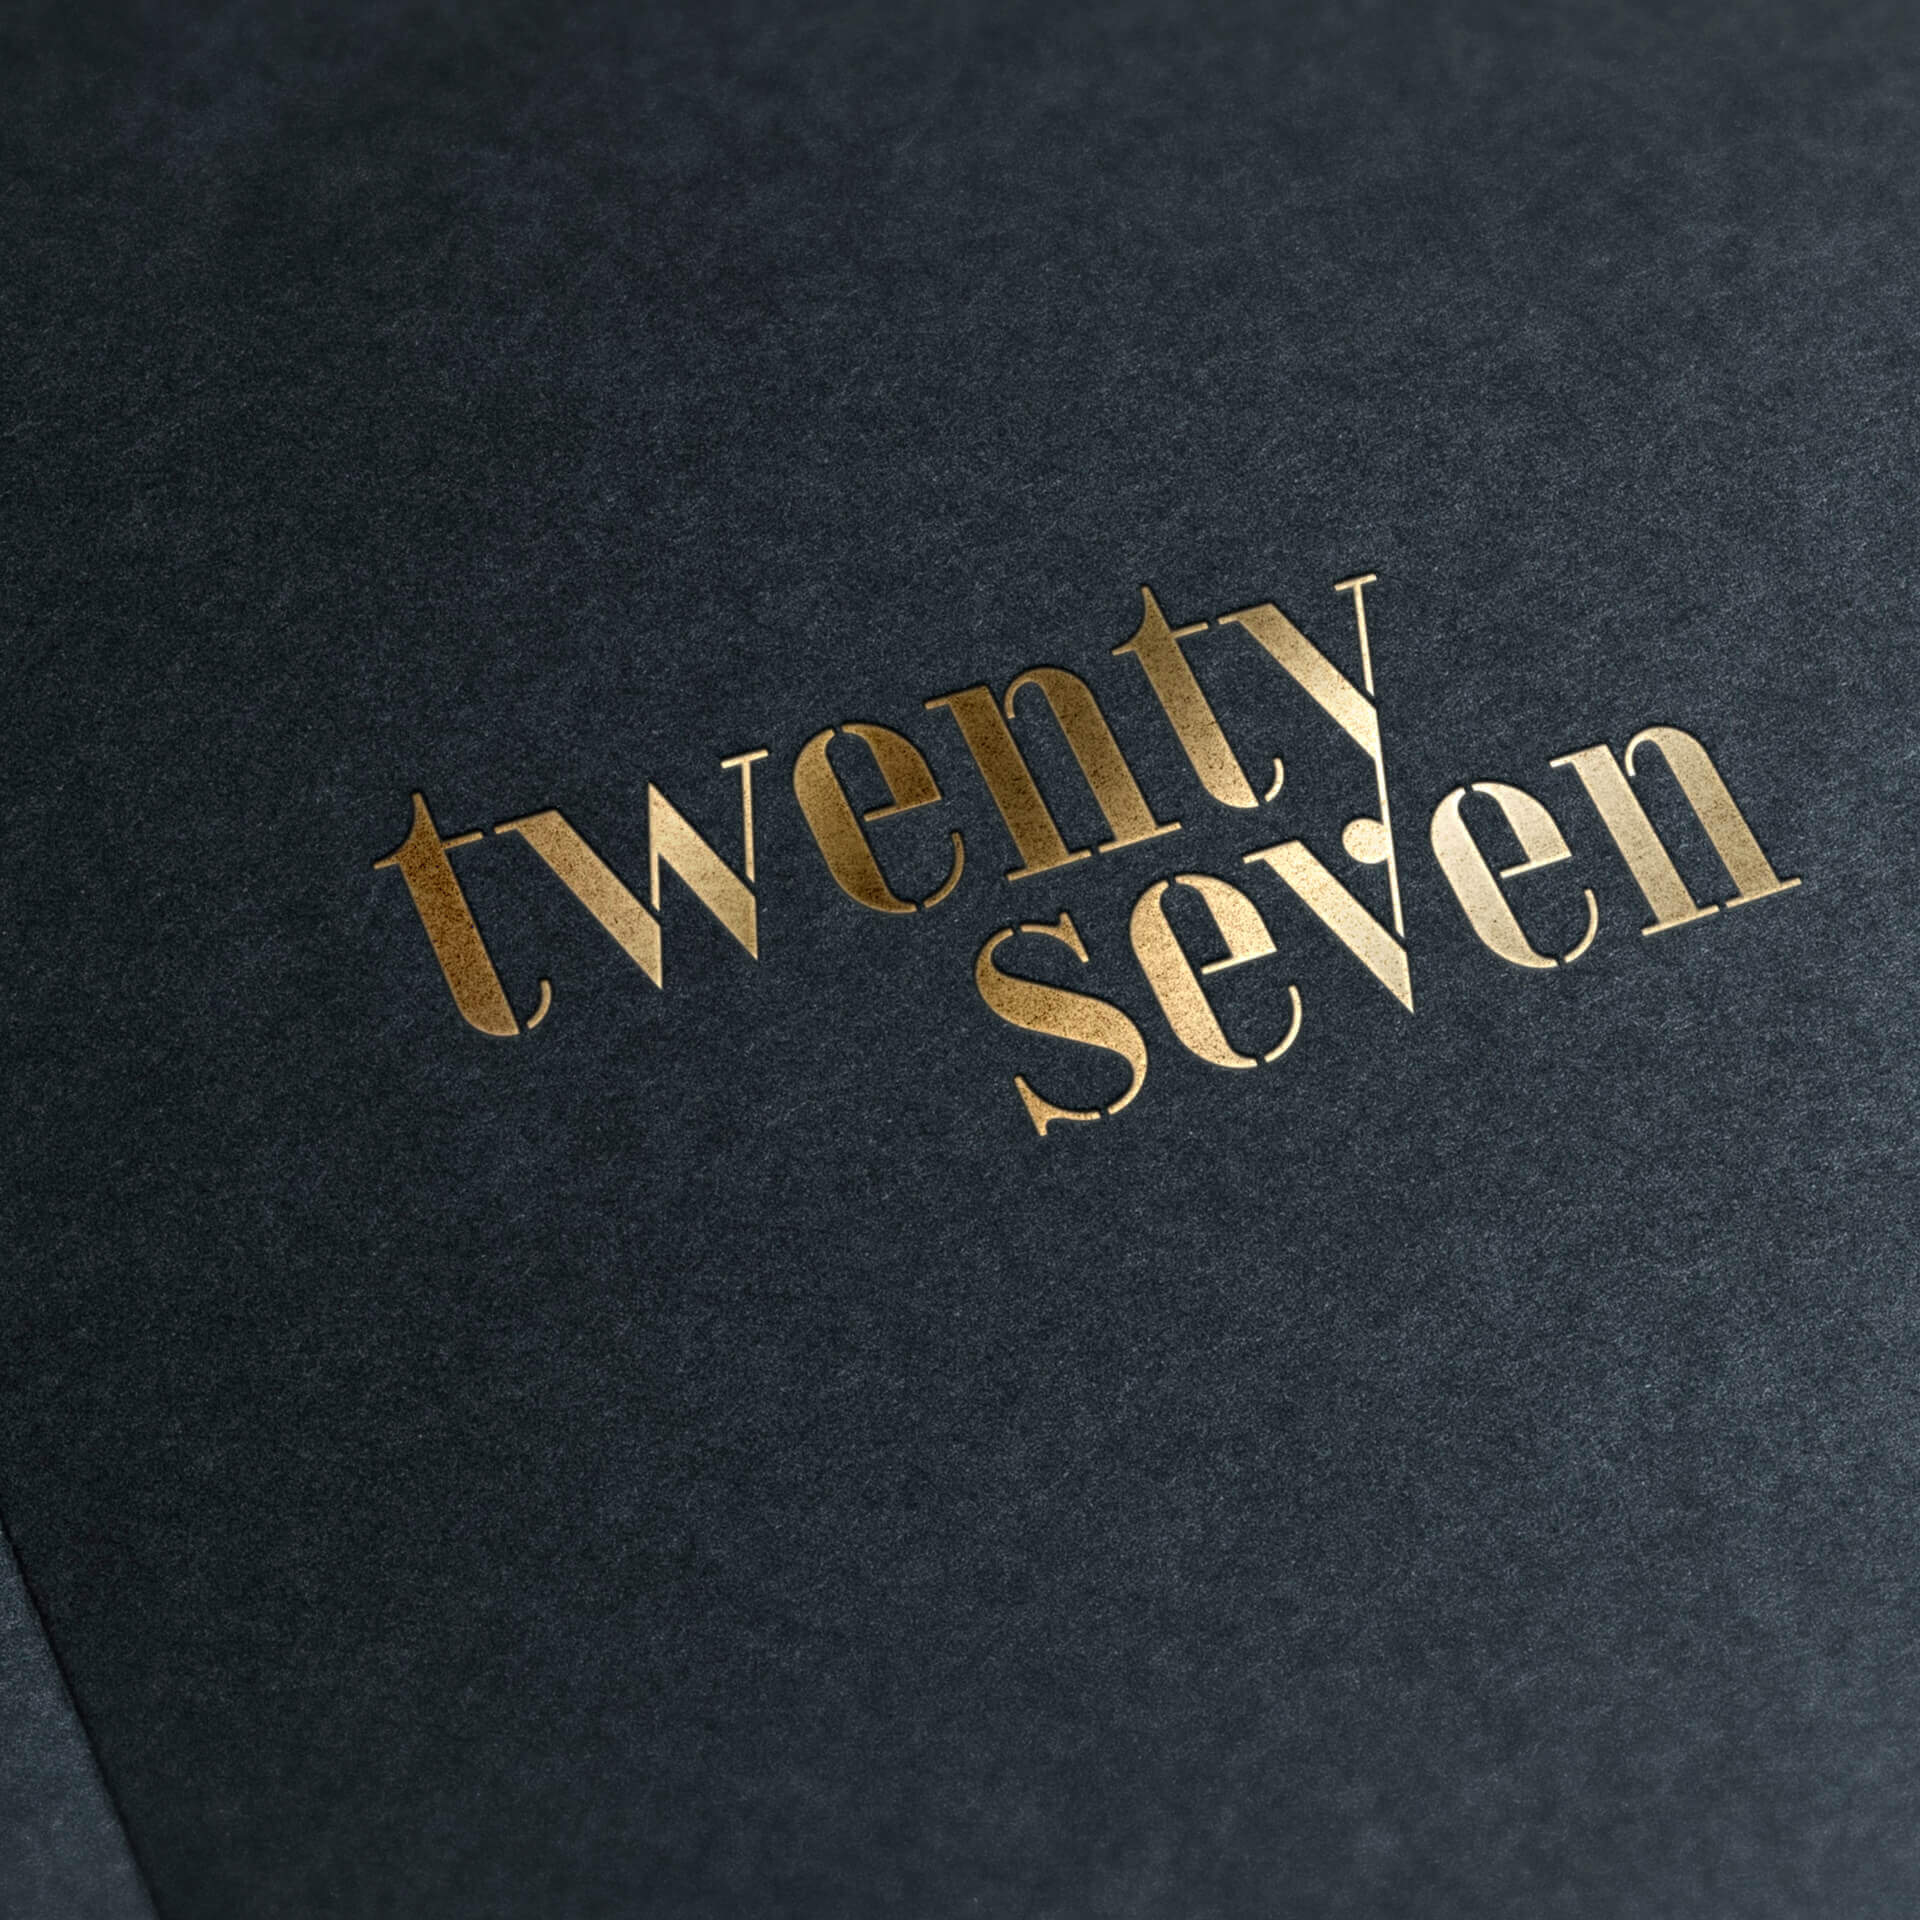 twentyseven-branding-booklet-gold-foil